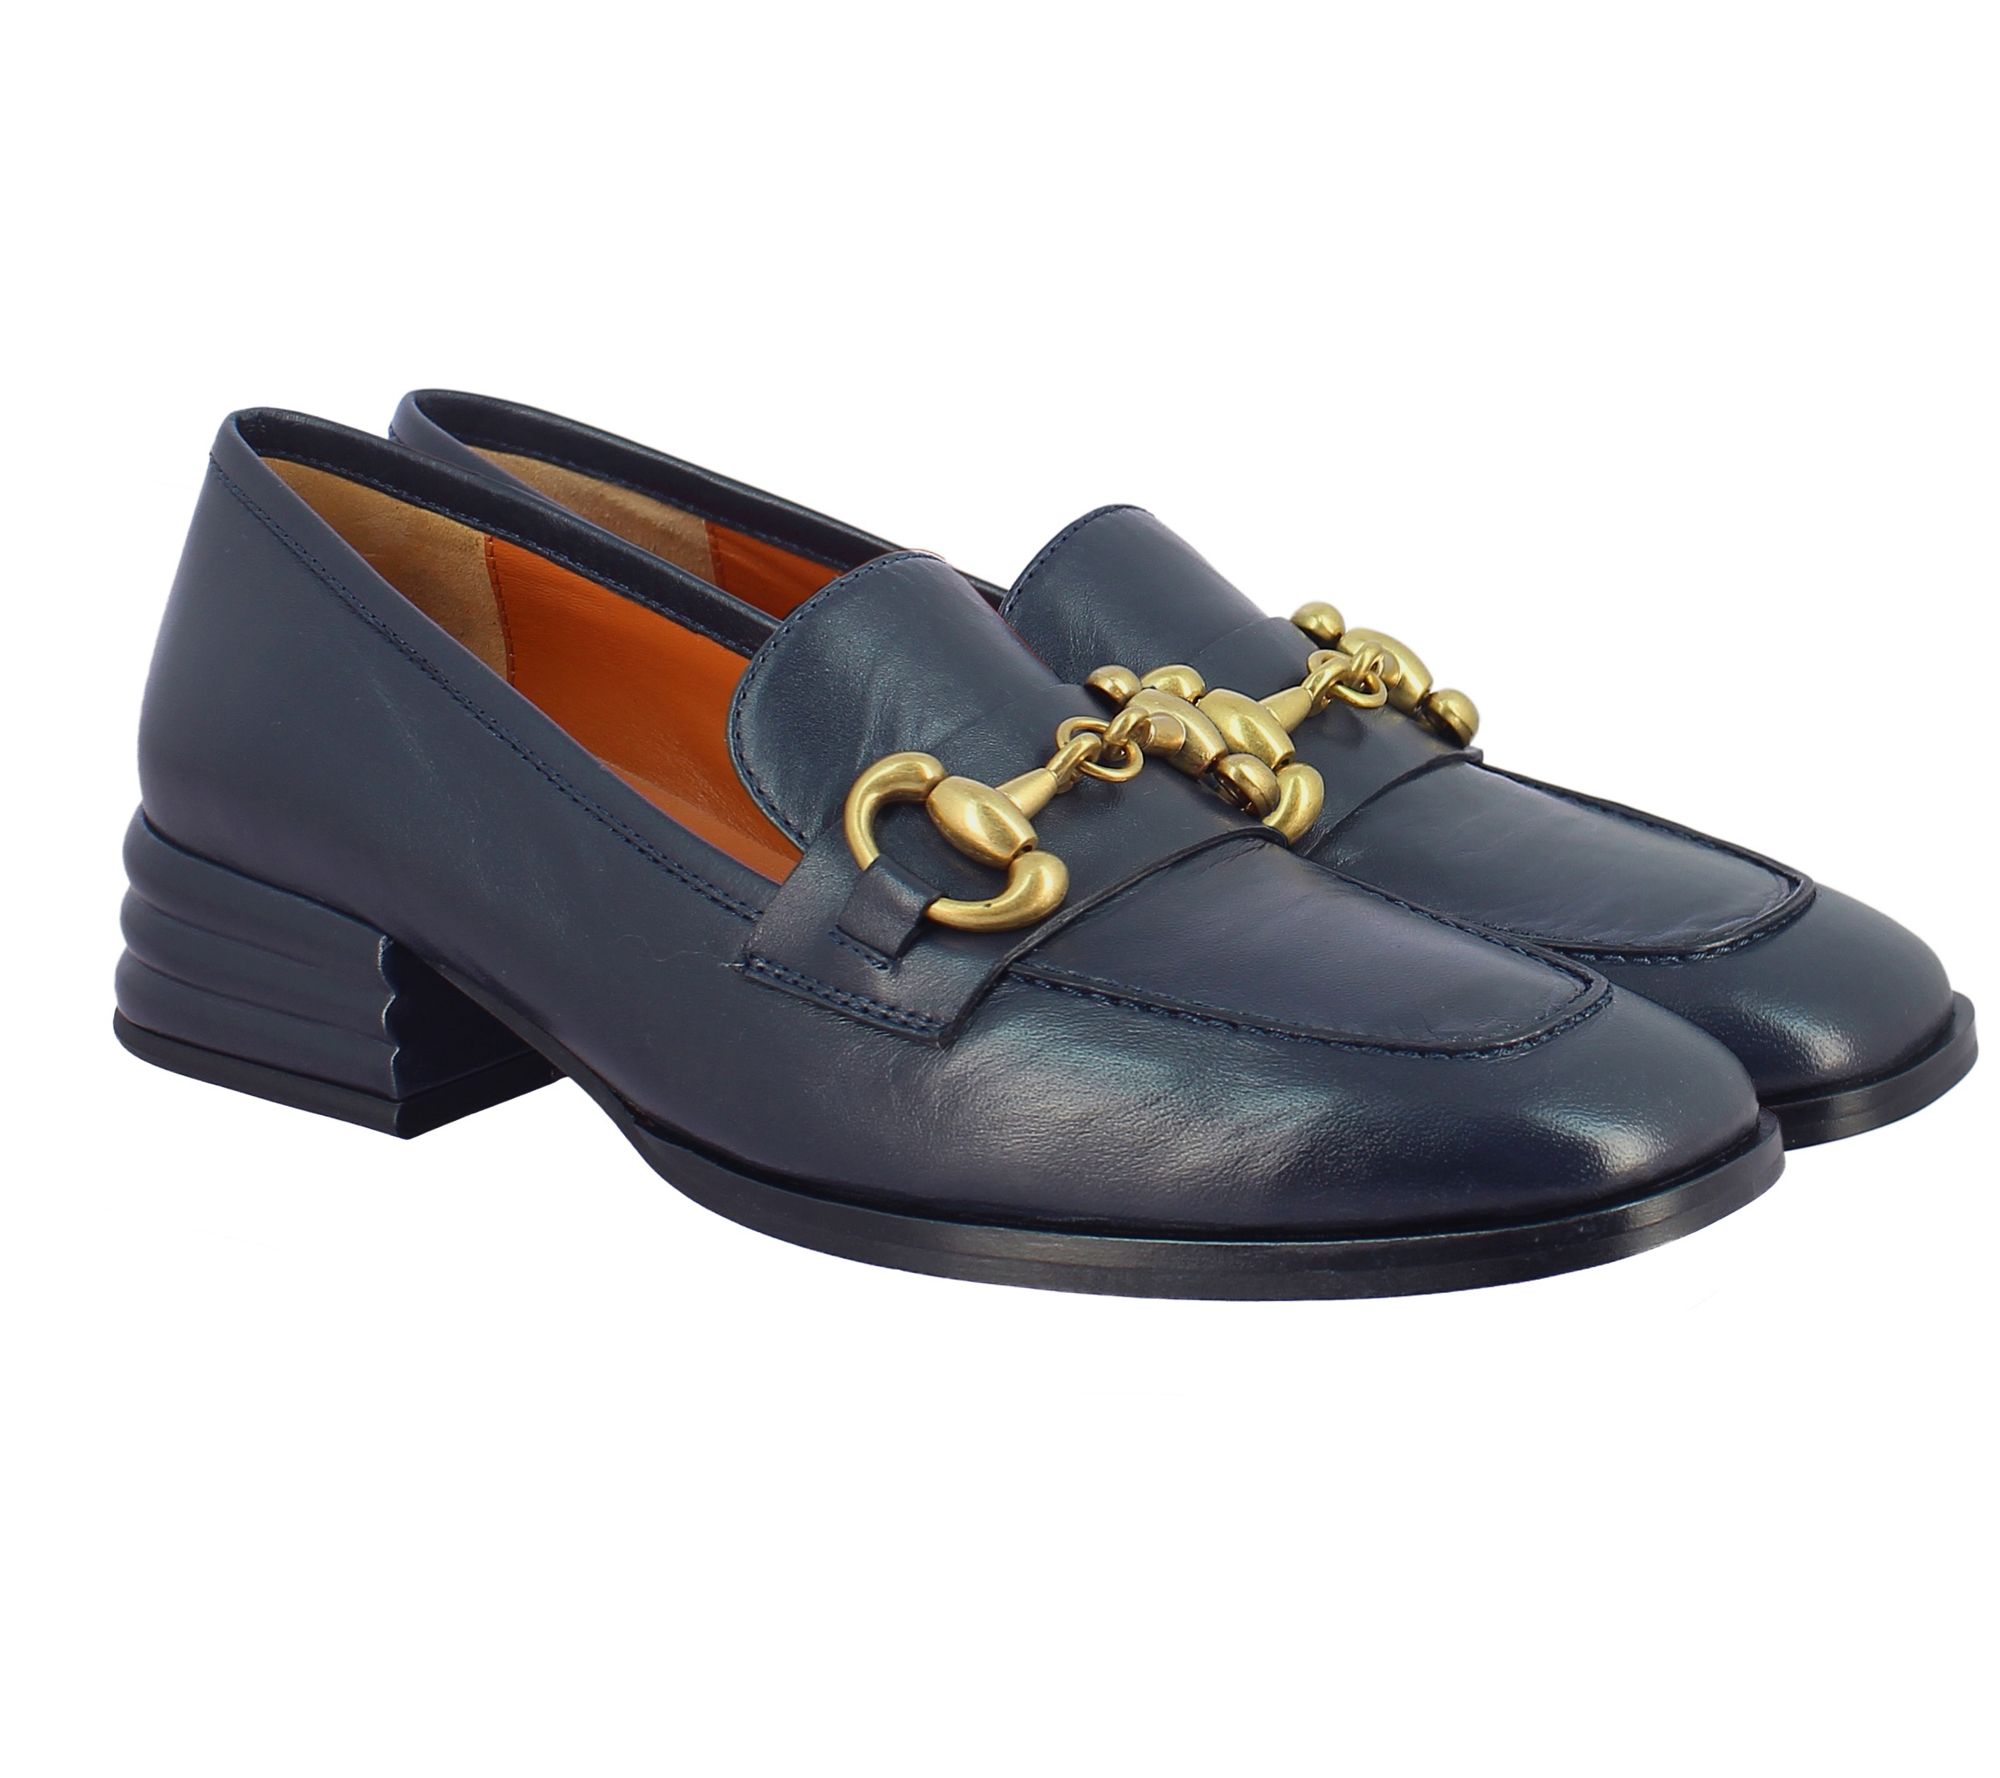 Saint G Leather Heels Moccasins - Jenny - QVC.com